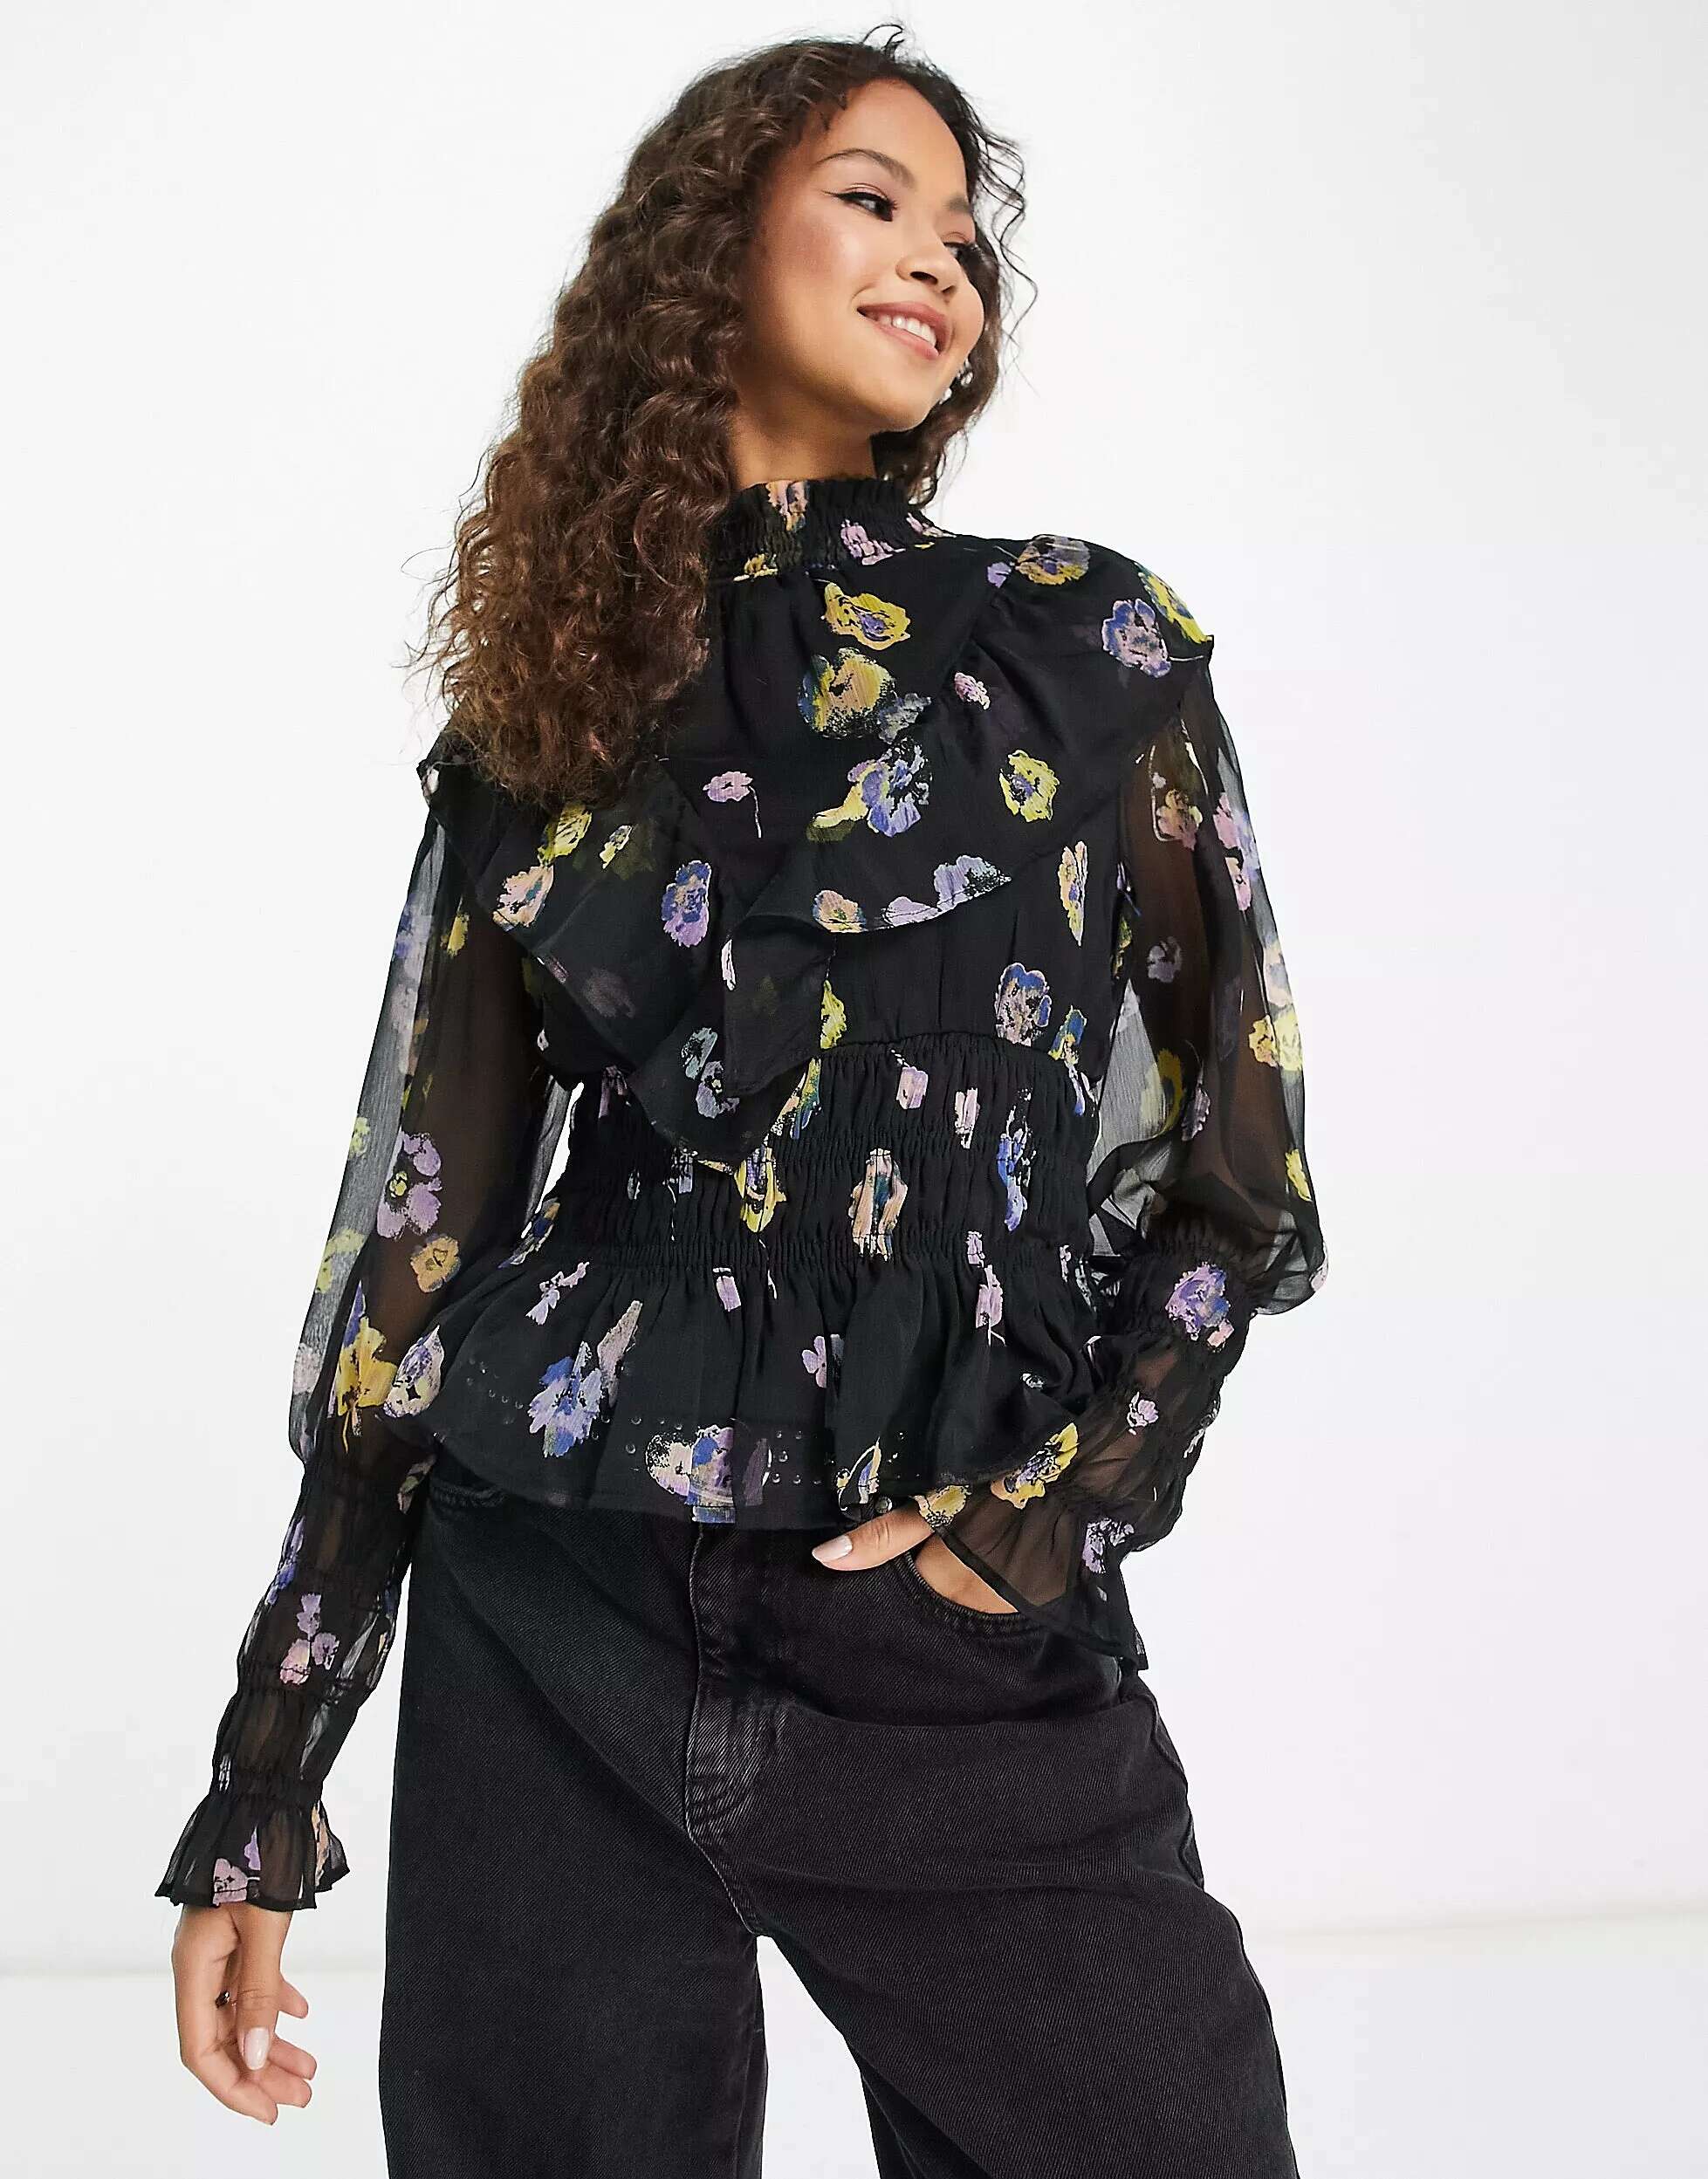 Блузка с присборками Vero Moda с цветочным принтом блузка с запахом vero moda сиреневого цвета с ярким цветочным принтом